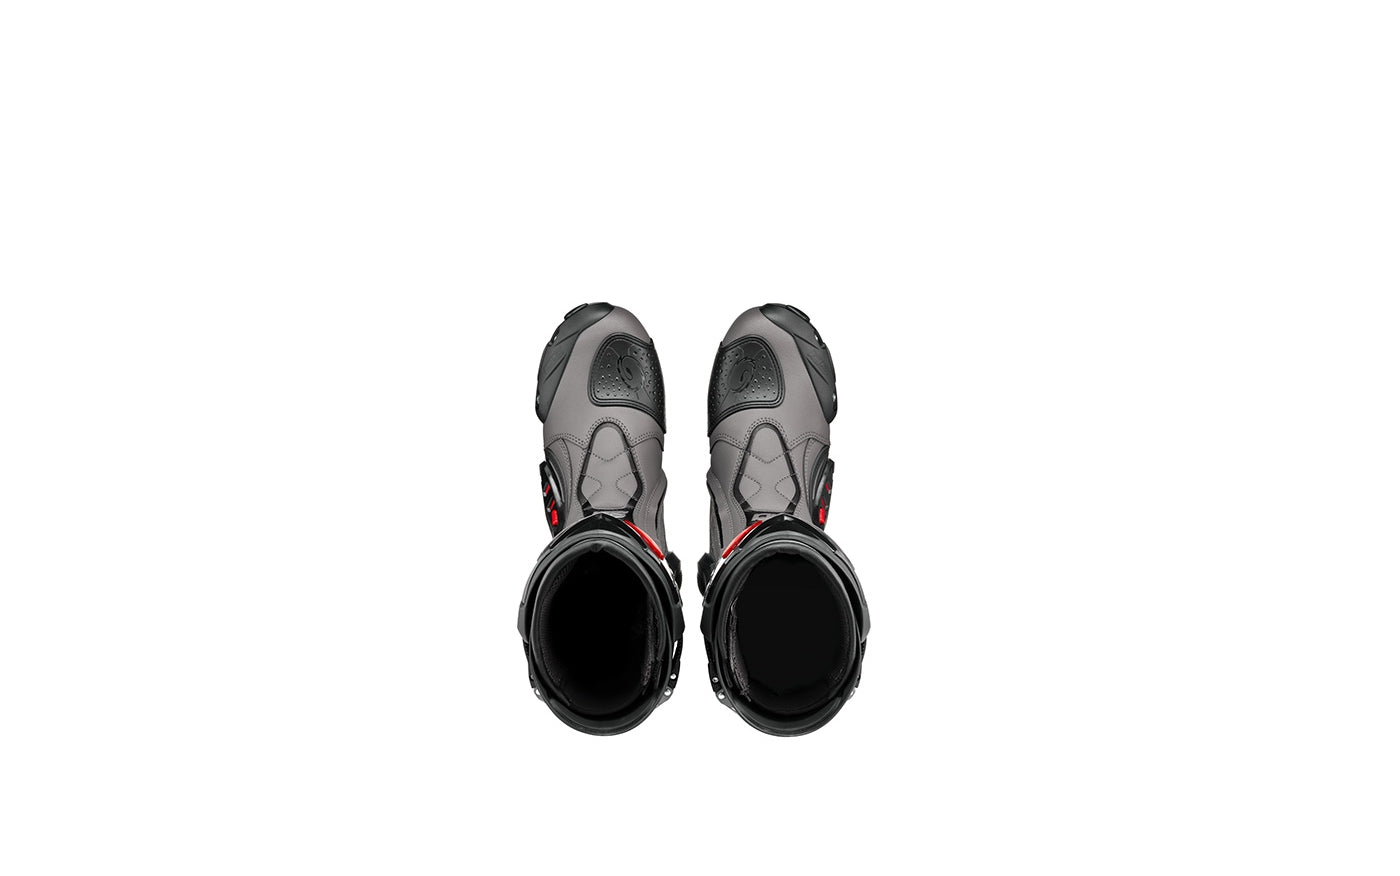 SIDI ST Grey/Black Boots